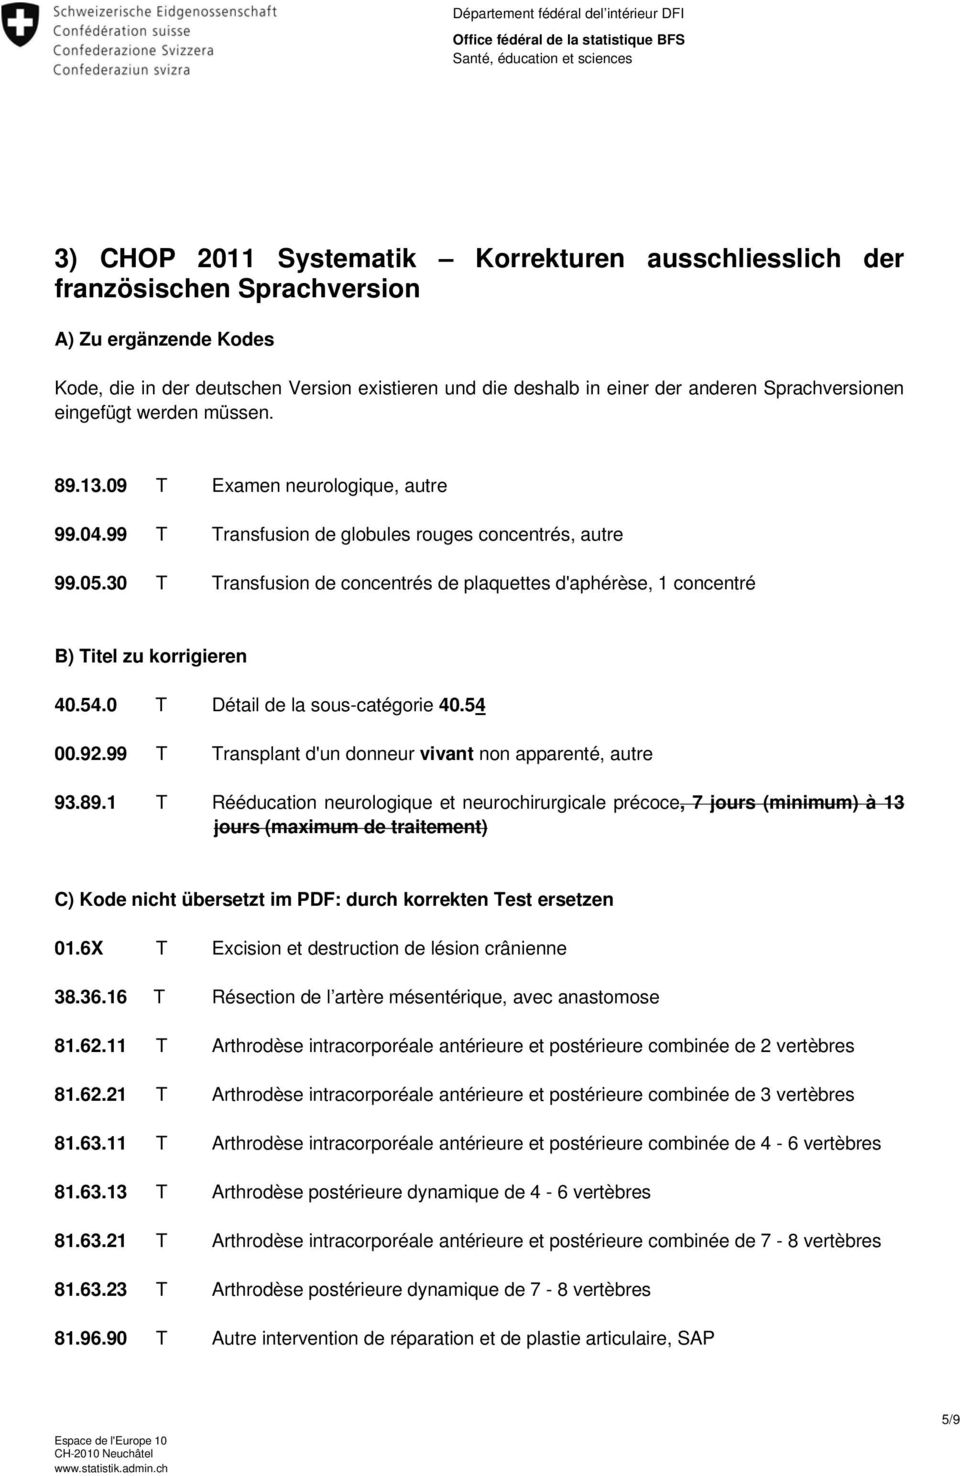 30 T Transfusion de concentrés de plaquettes d'aphérèse, 1 concentré B) Titel zu korrigieren 40.54.0 T Détail de la sous-catégorie 40.54 00.92.99 T Transplant d'un donneur vivant apparenté, autre 93.